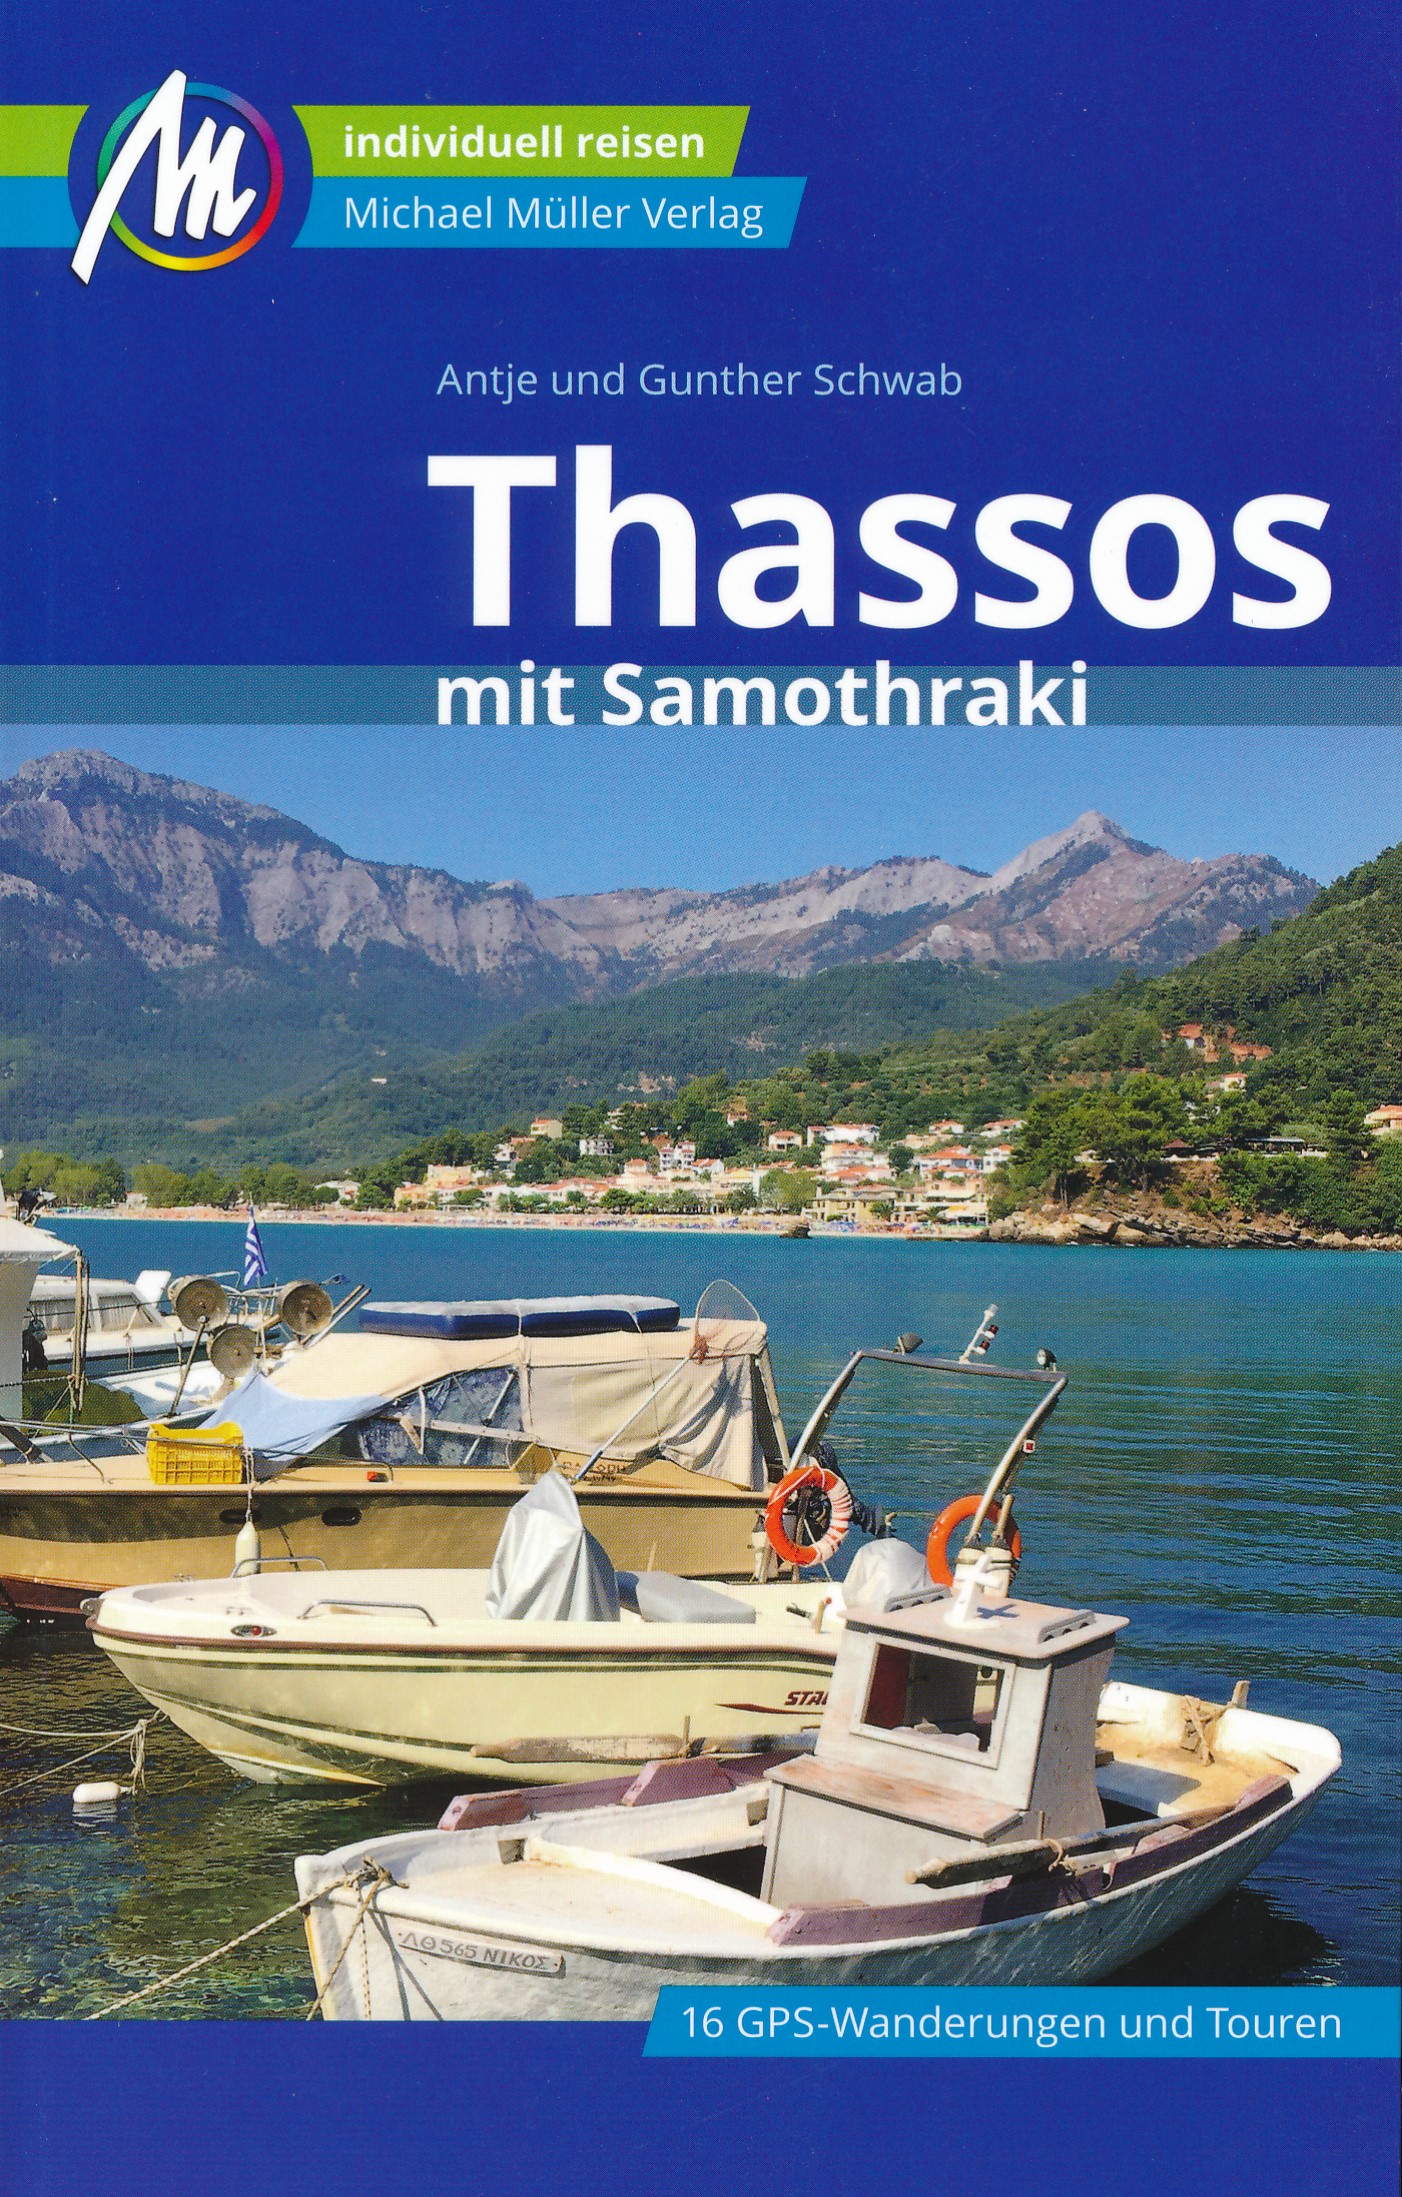 Online bestellen: Reisgids Thassos & Samothraki | Michael Müller Verlag